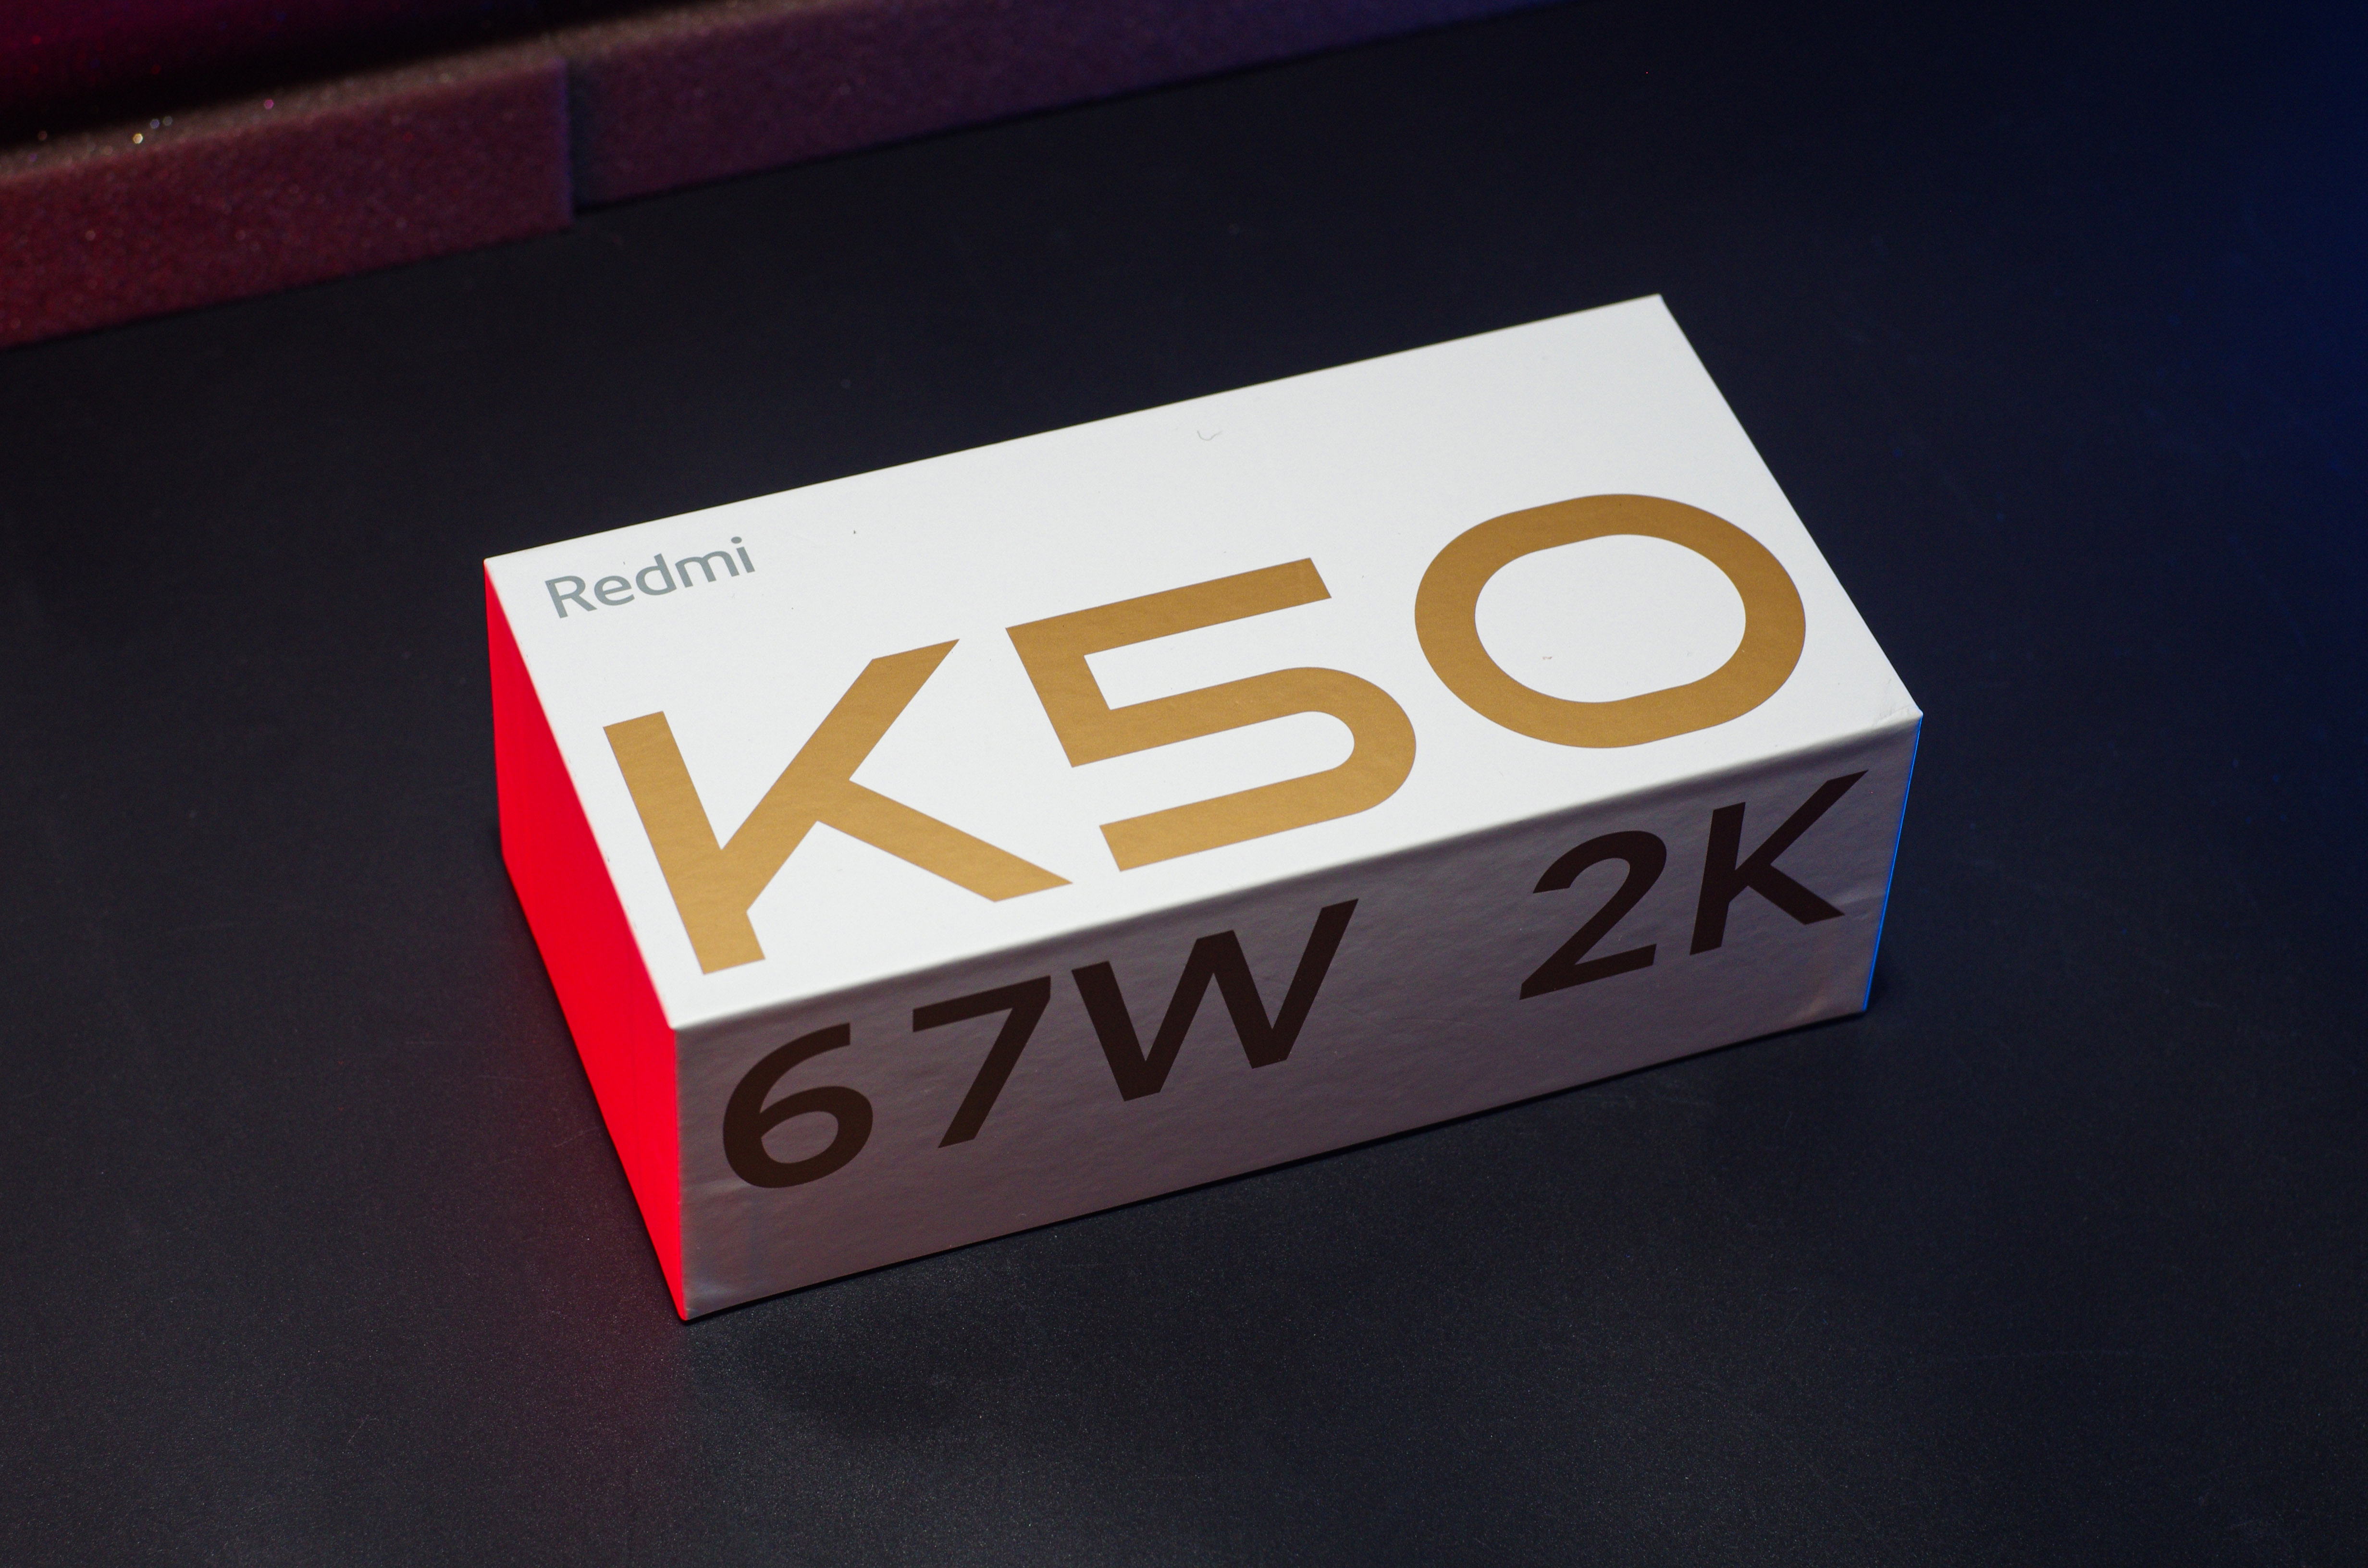 Redmi K50评测：2K直屏大圆满、天玑8100一战封神